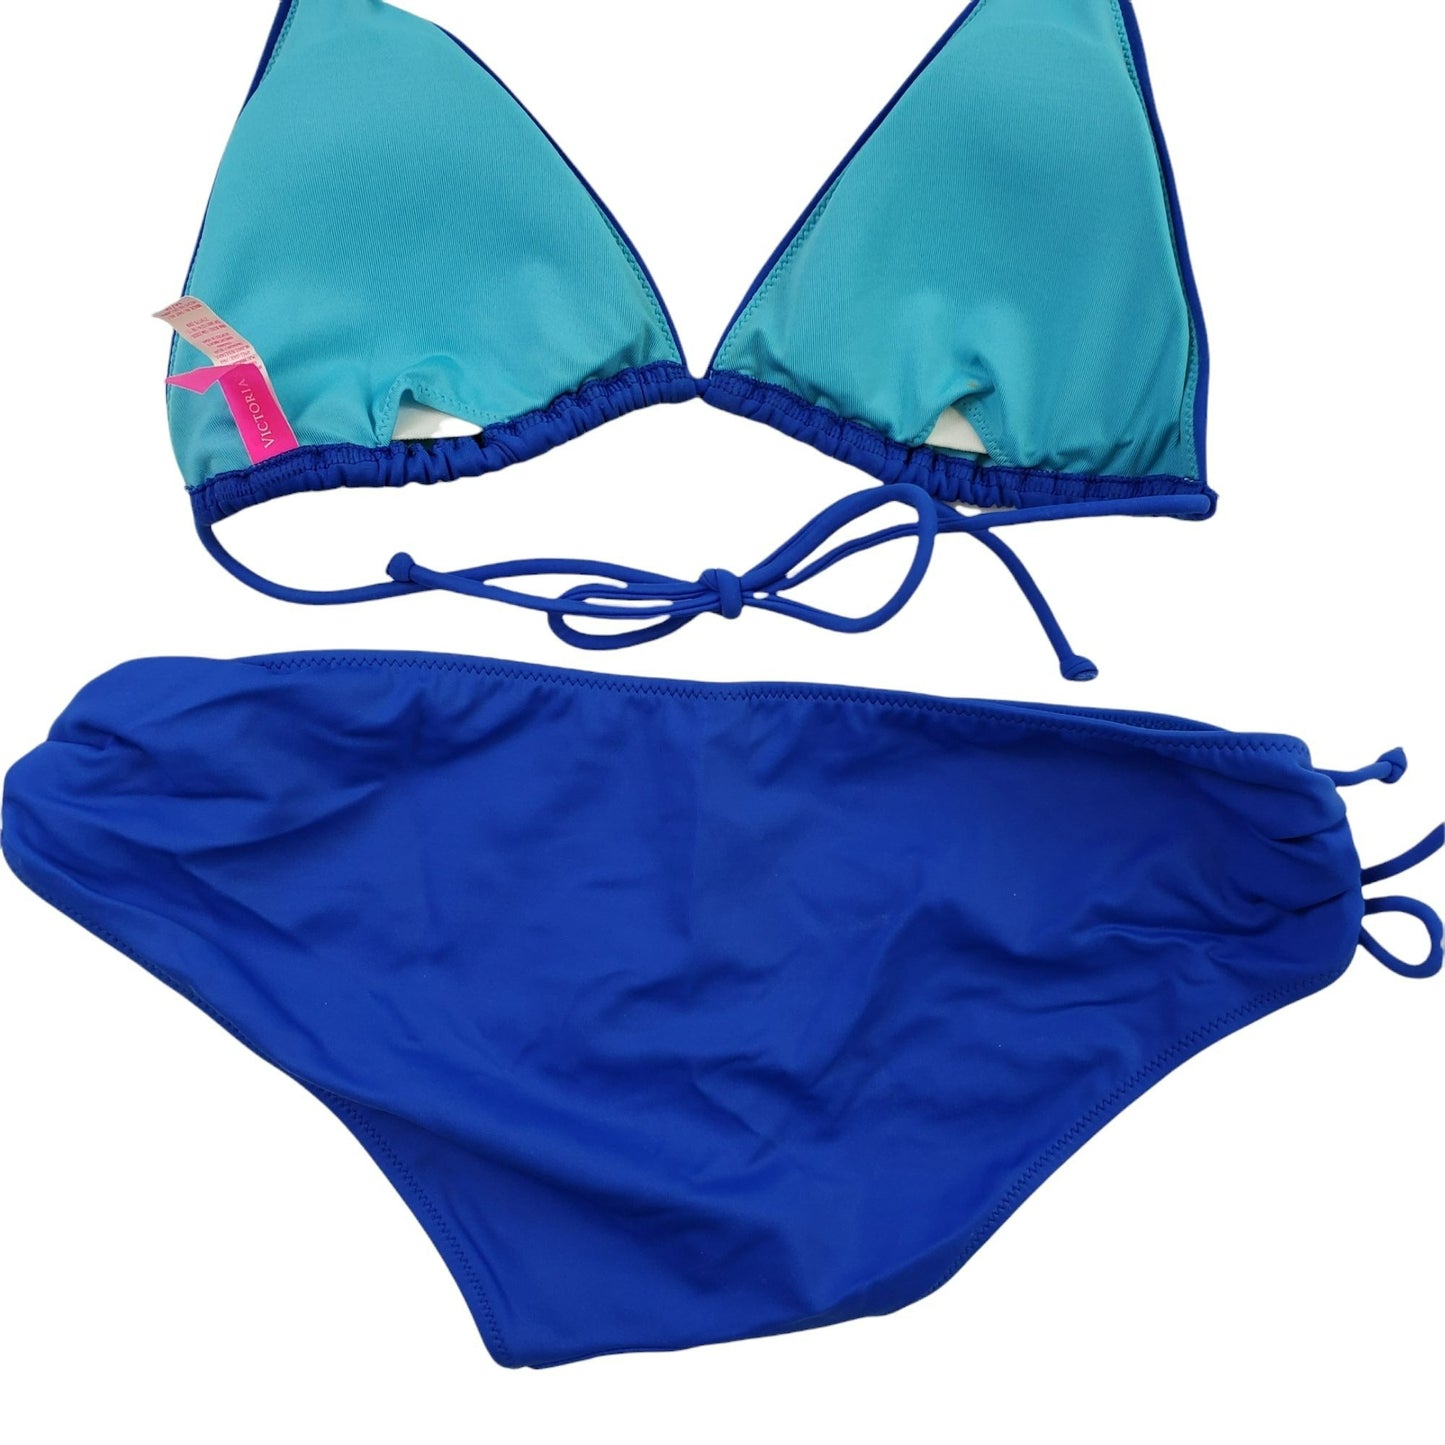 Victoria's Secret Bright Blue Bikini - Top Size M, Bottoms Size S.